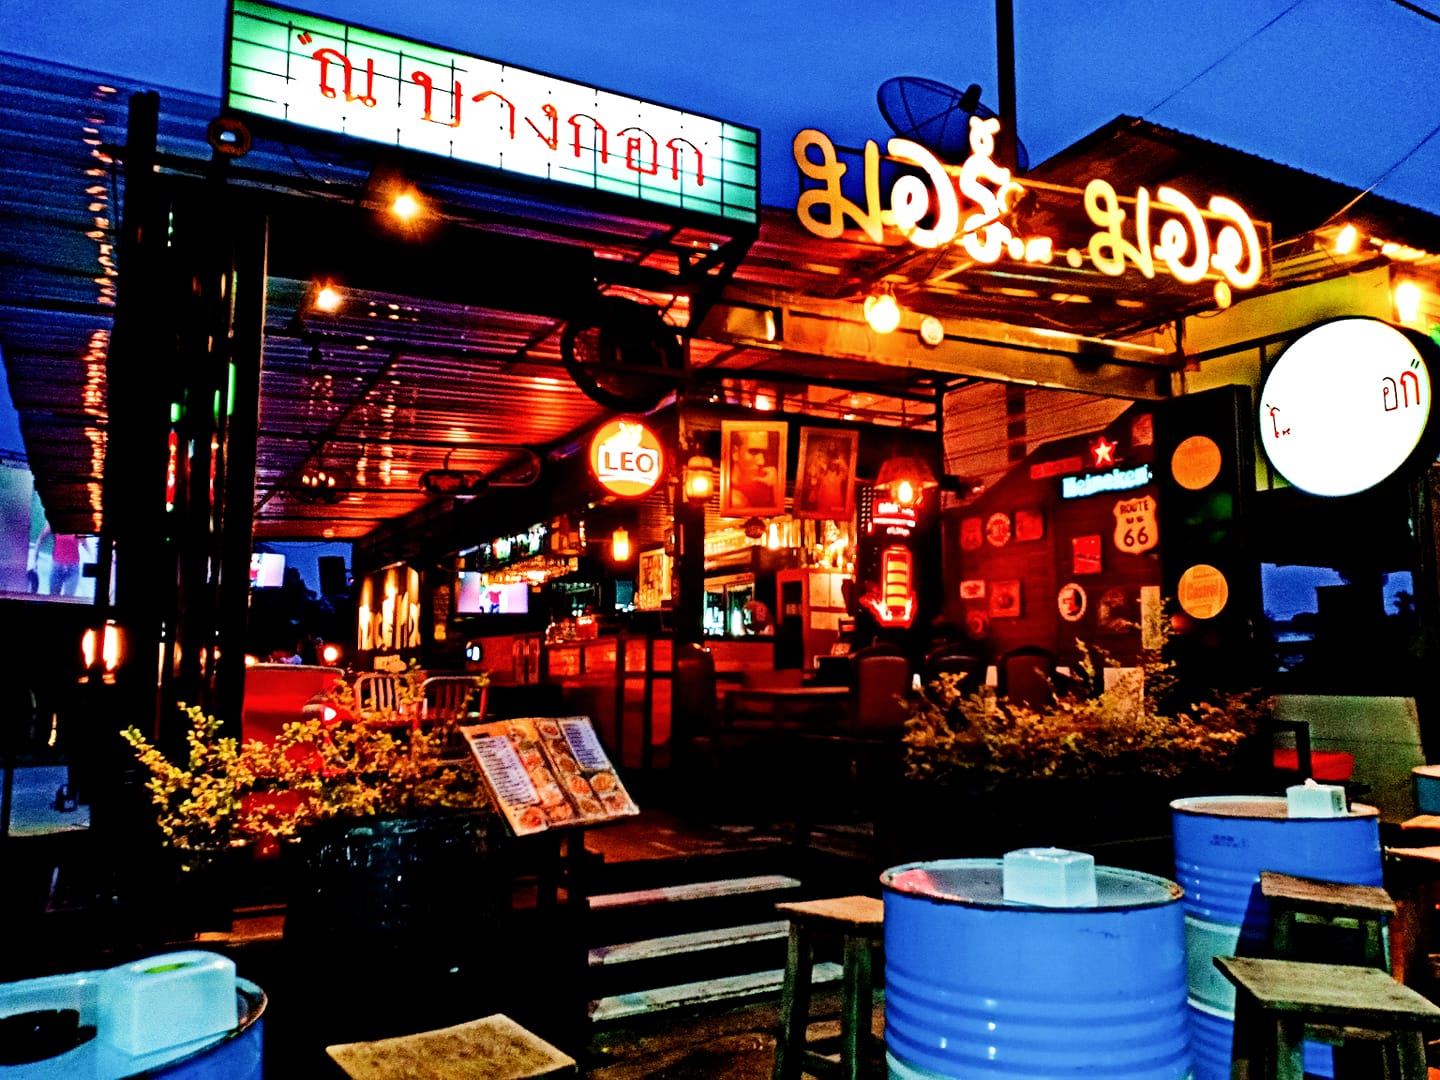 มอร์ม ออ บาร์ แอนด์ เรสเตอรองท์ (More Moo bar&restaurant) : นครราชสีมา (Nakhon Ratchasima)